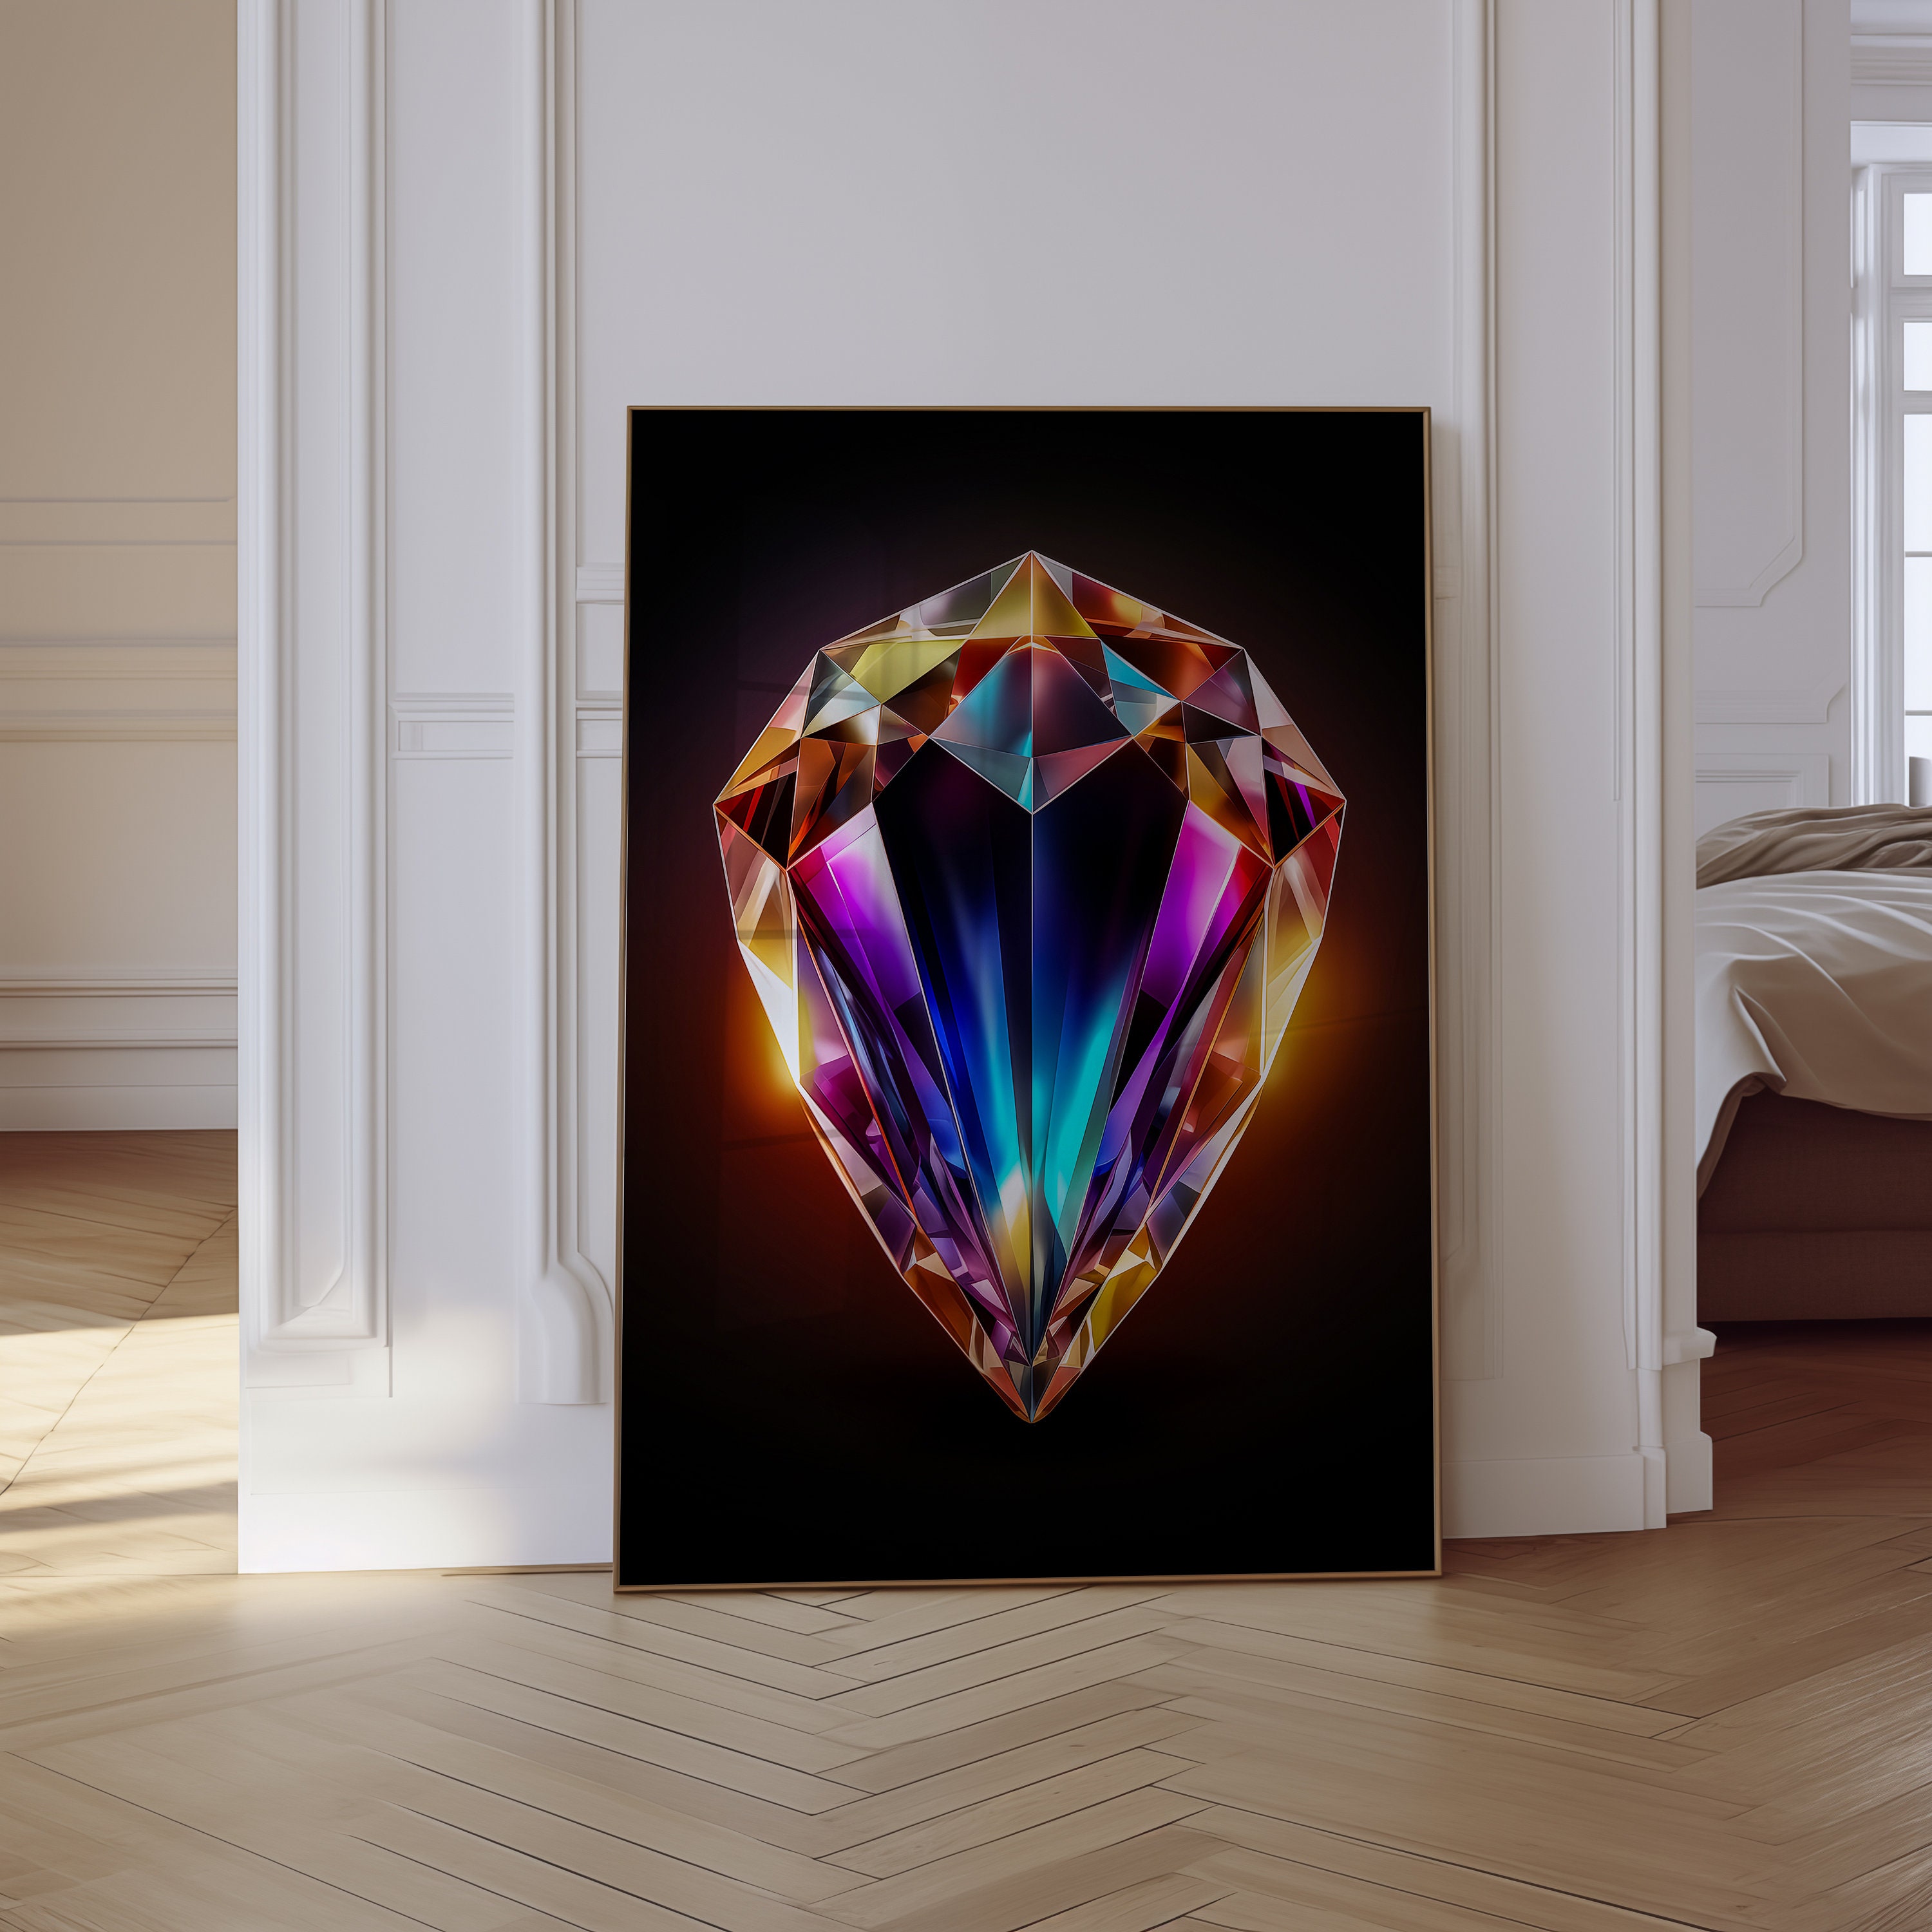 Video Game Inspired Diamond Art Kit – Feeling Pretty Sparkly LLC